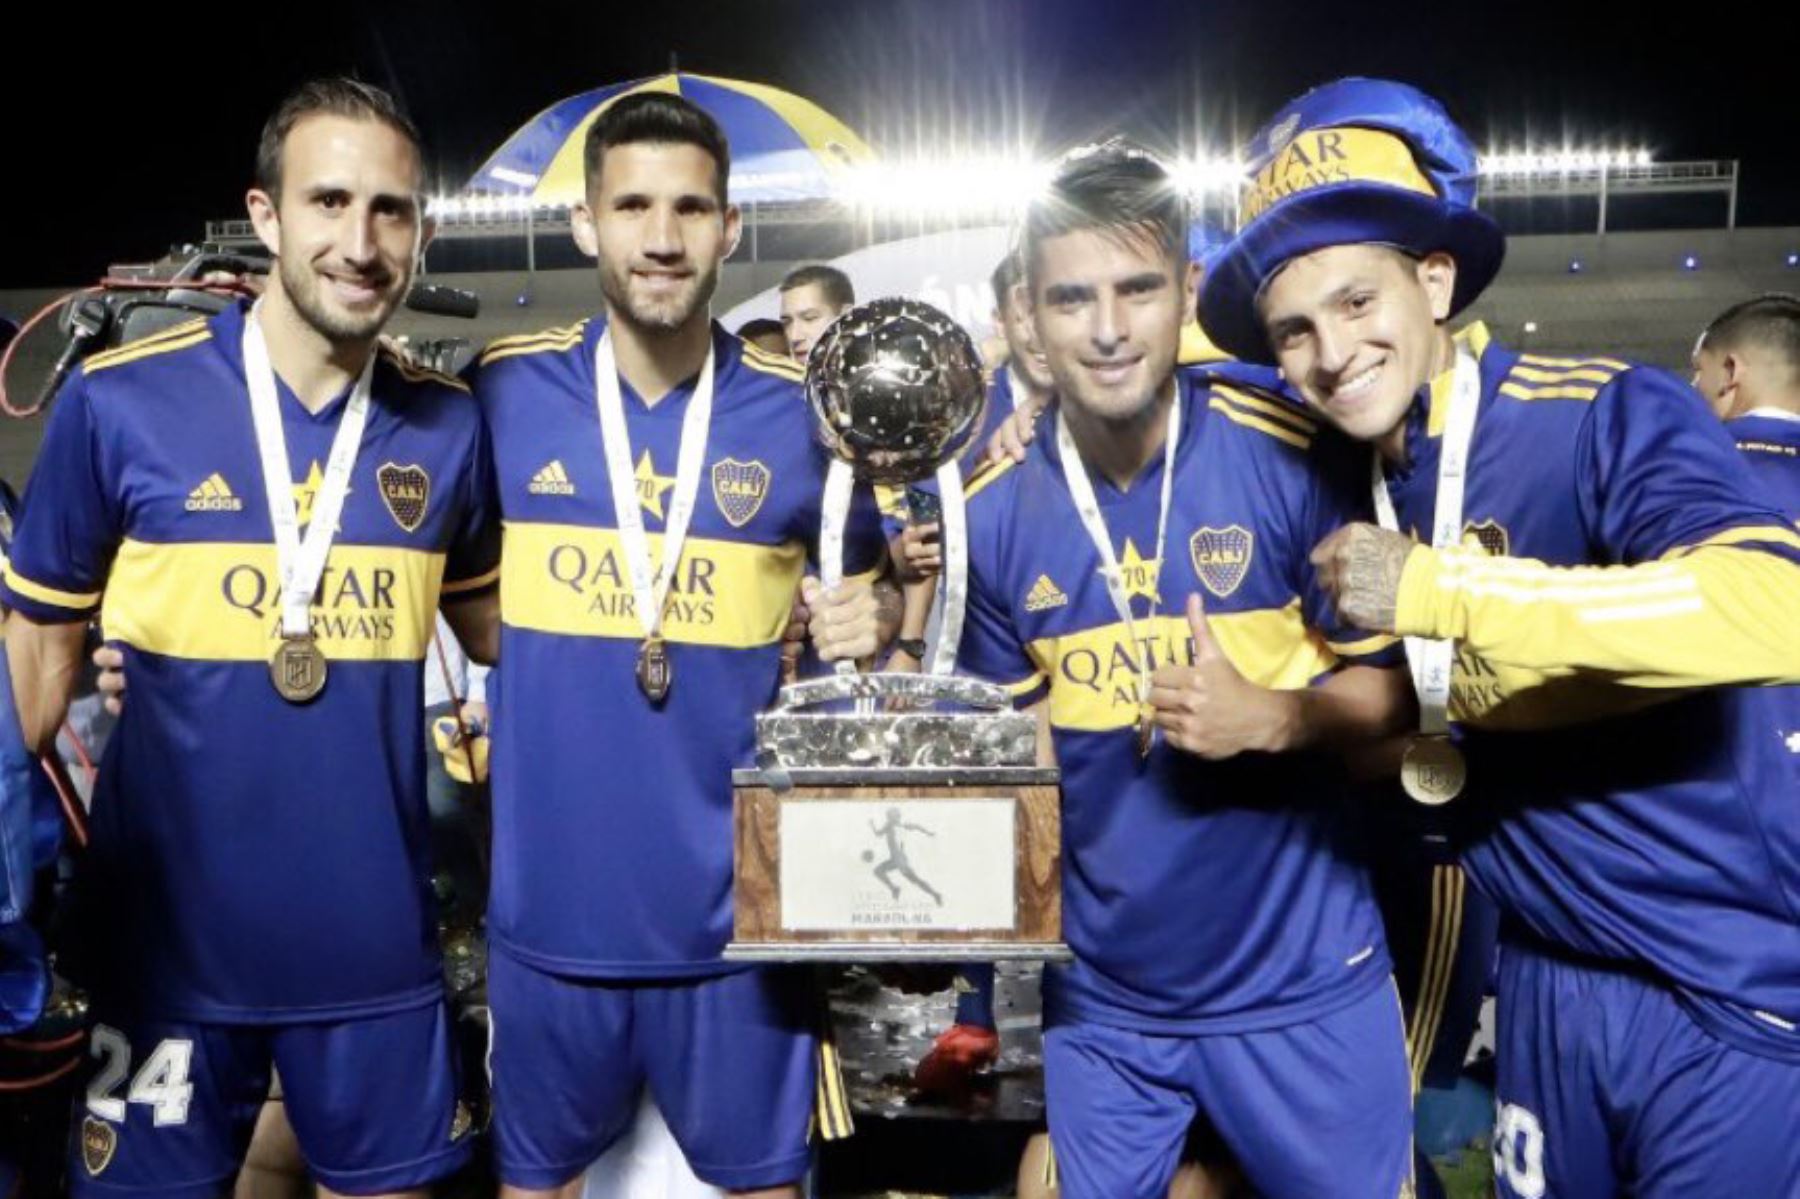 Carlos Zambrano fue uno de los artífices para que Boca Juniors logre su título número 70 de su historia luego que ayer derrotó por penales 5-3 al Banfield, después de igualar 1-1 en la final. Foto: Twitter/@5zambranocz